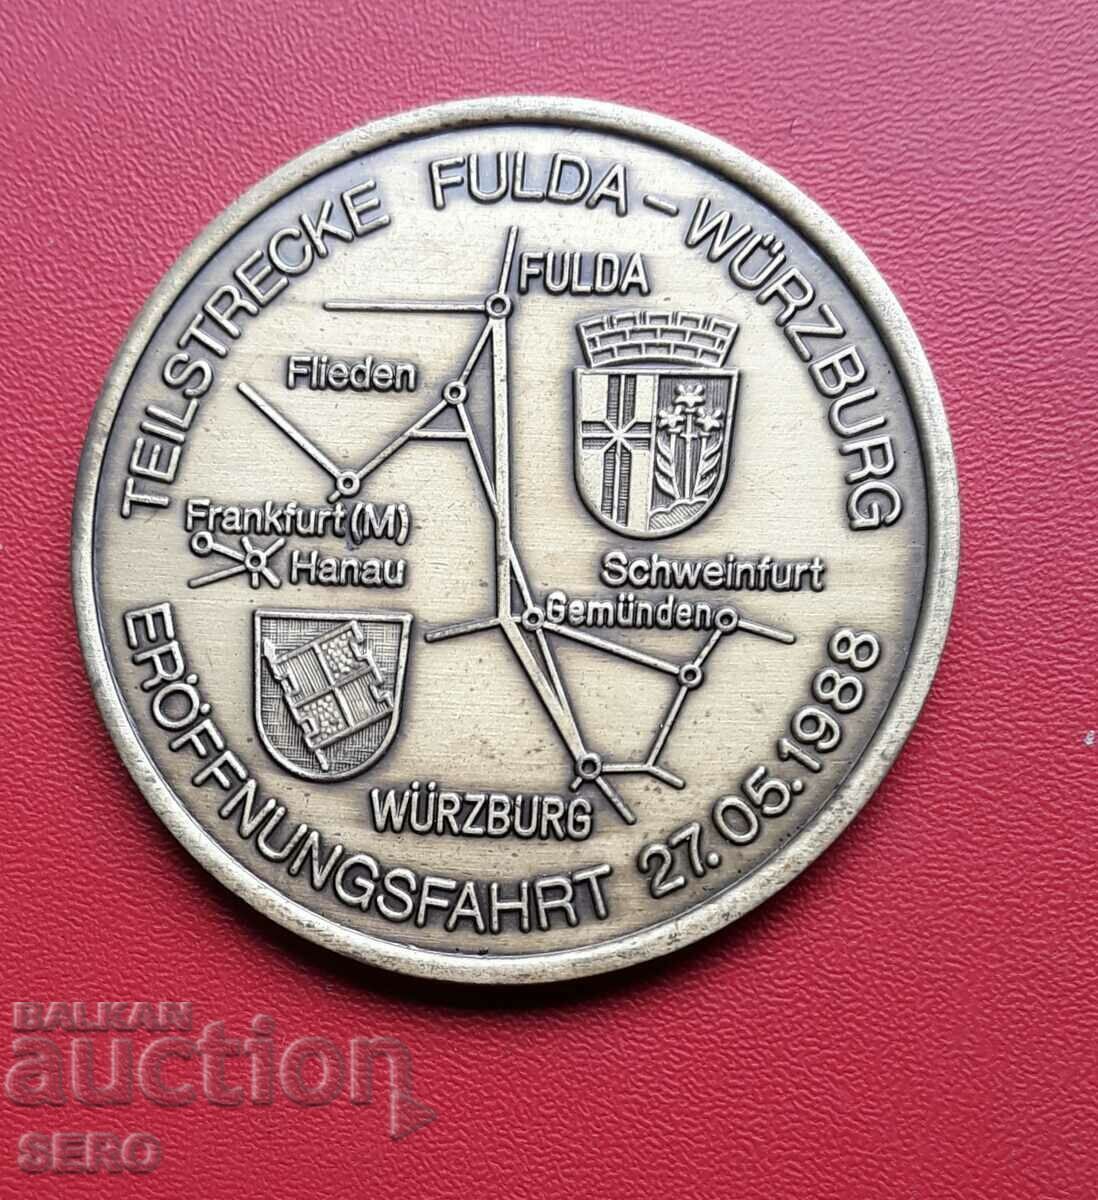 Germania-medalie 1986-constructia liniei de cale ferata Hanovra-Würzburg